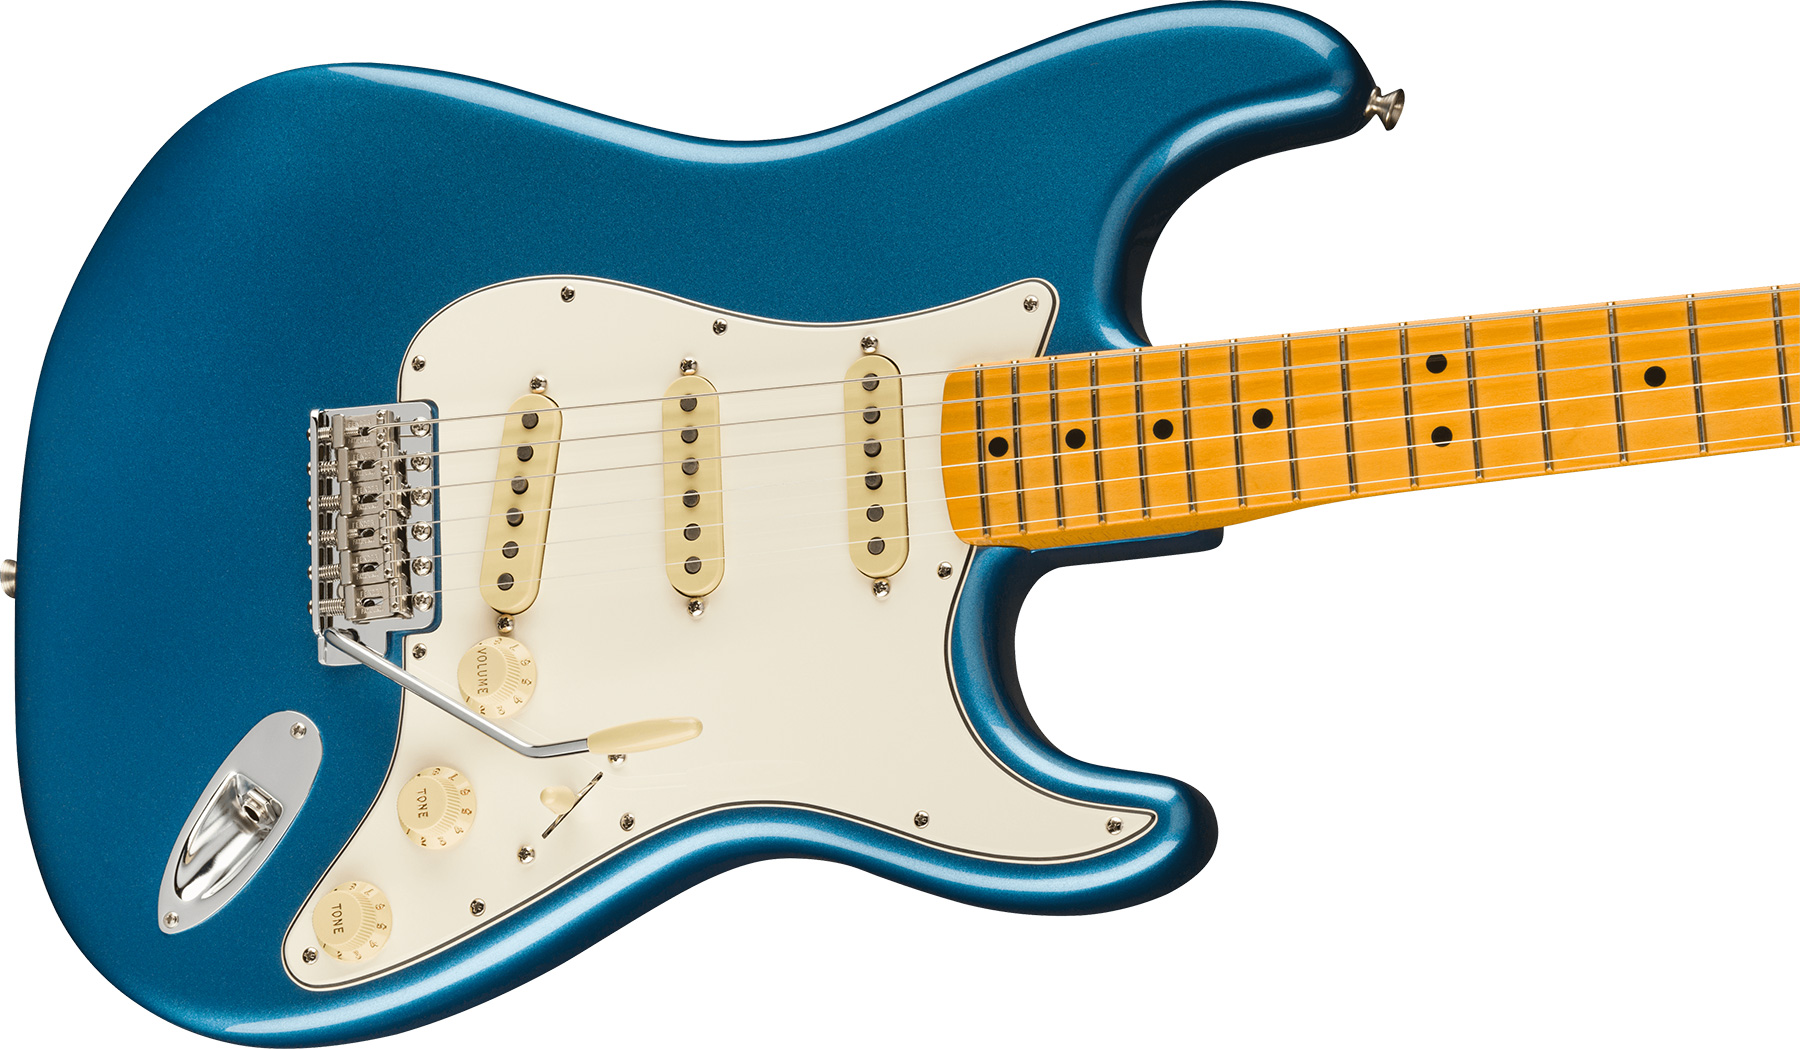 Fender Strat 1973 American Vintage Ii Usa 3s Trem Mn - Lake Placid Blue - Str shape electric guitar - Variation 2